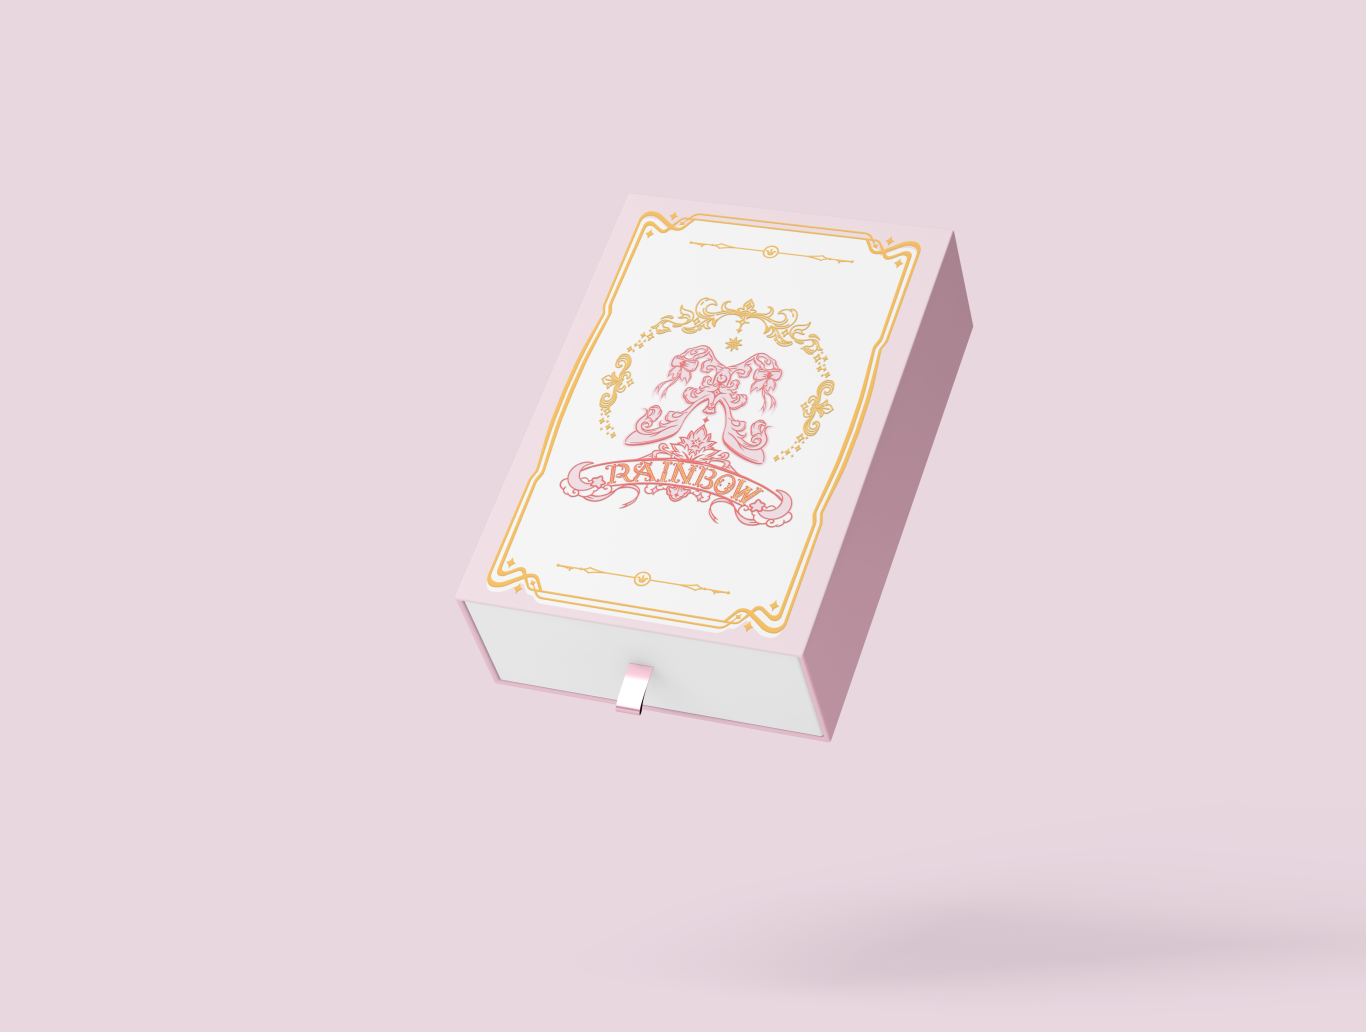 星夜彩虹lolita鞋盒包装设计图0